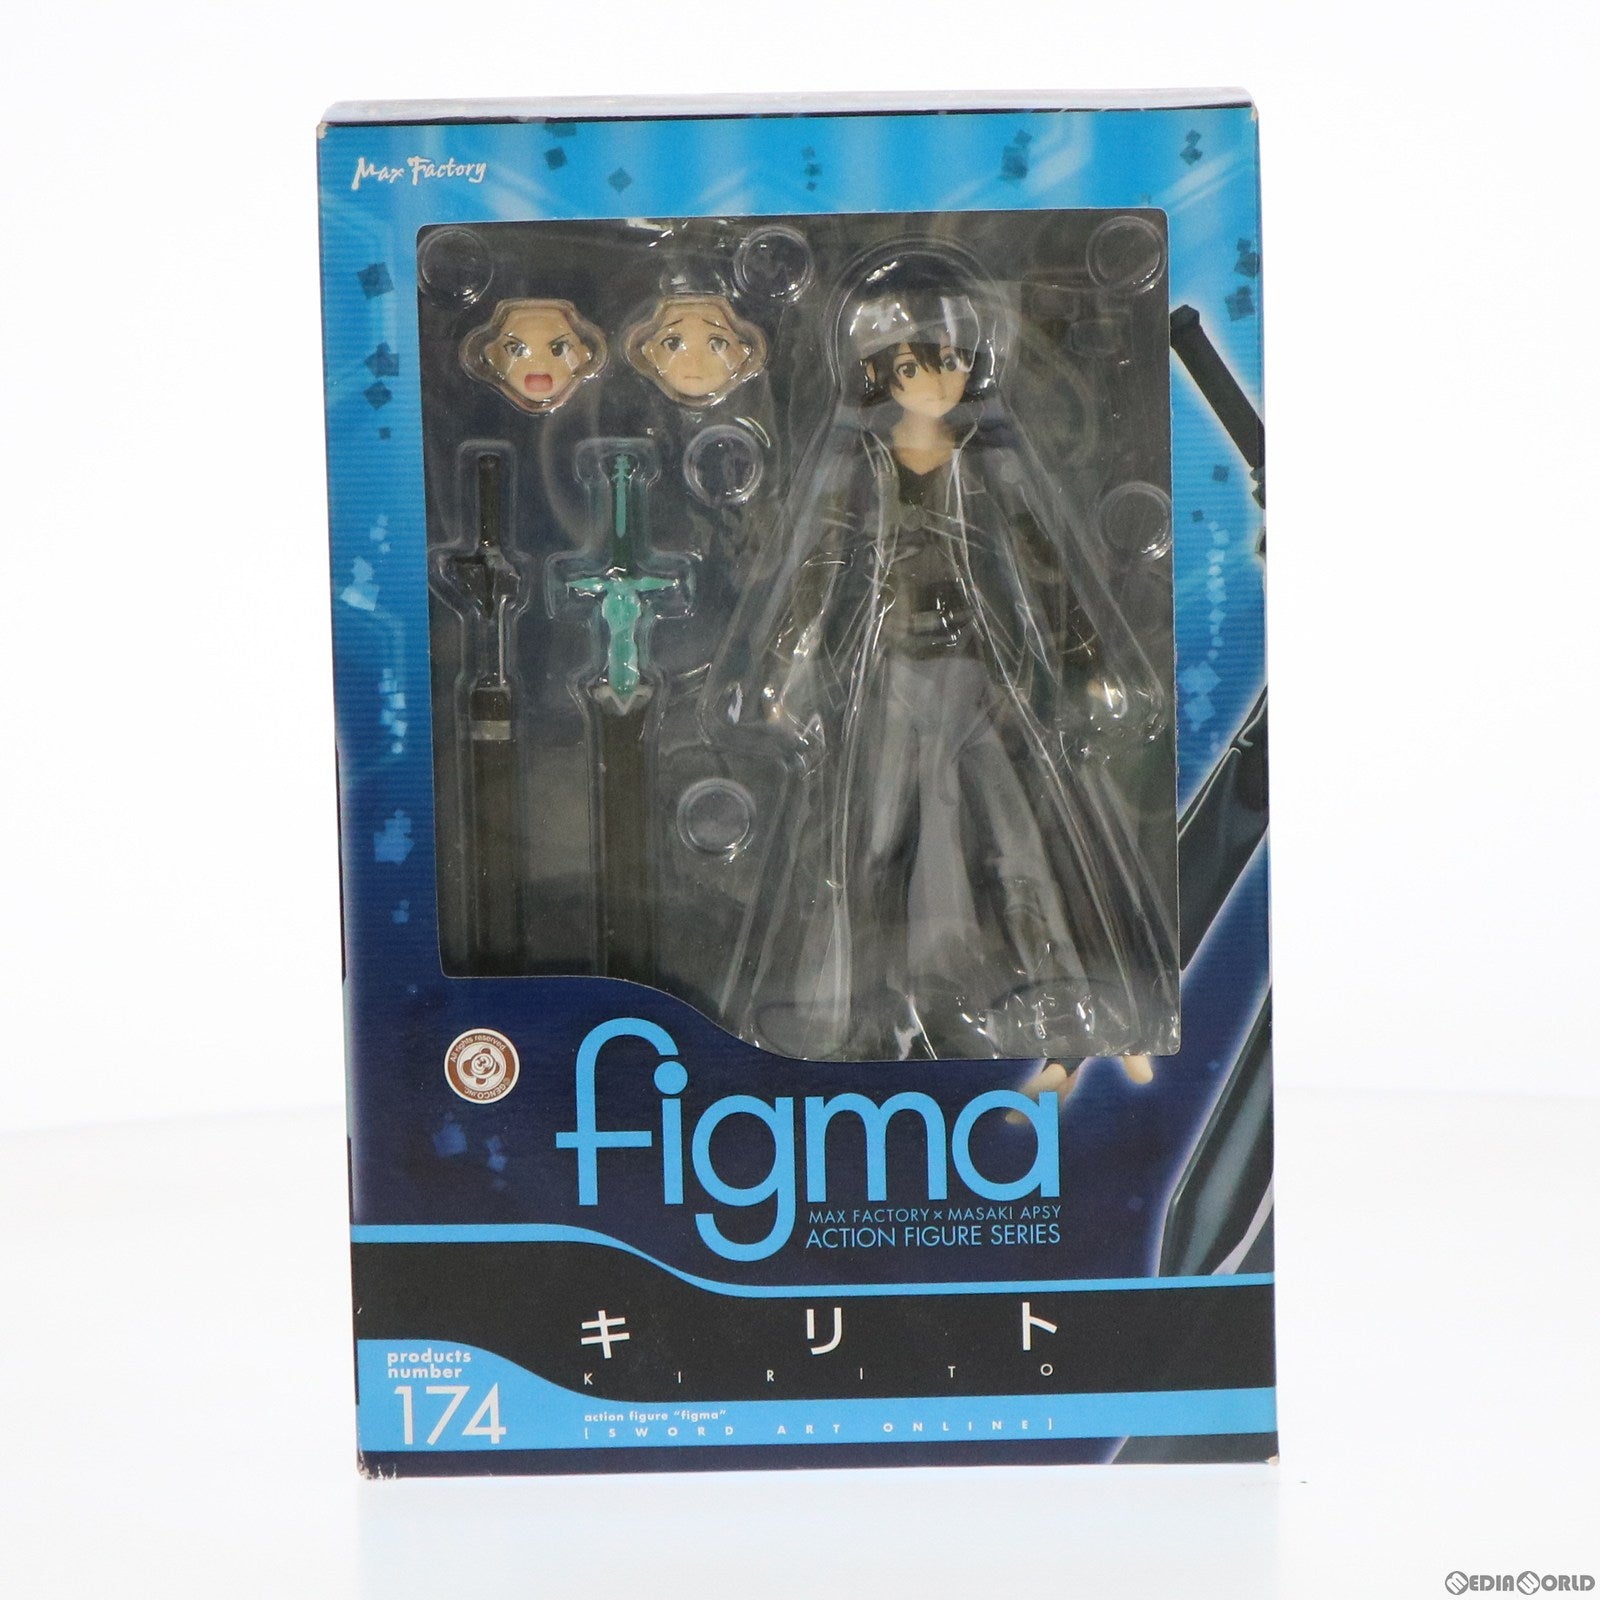 【中古即納】[FIG]figma(フィグマ) 174 キリト ソードアート・オンライン 完成品 可動フィギュア マックスファクトリー(20130623)